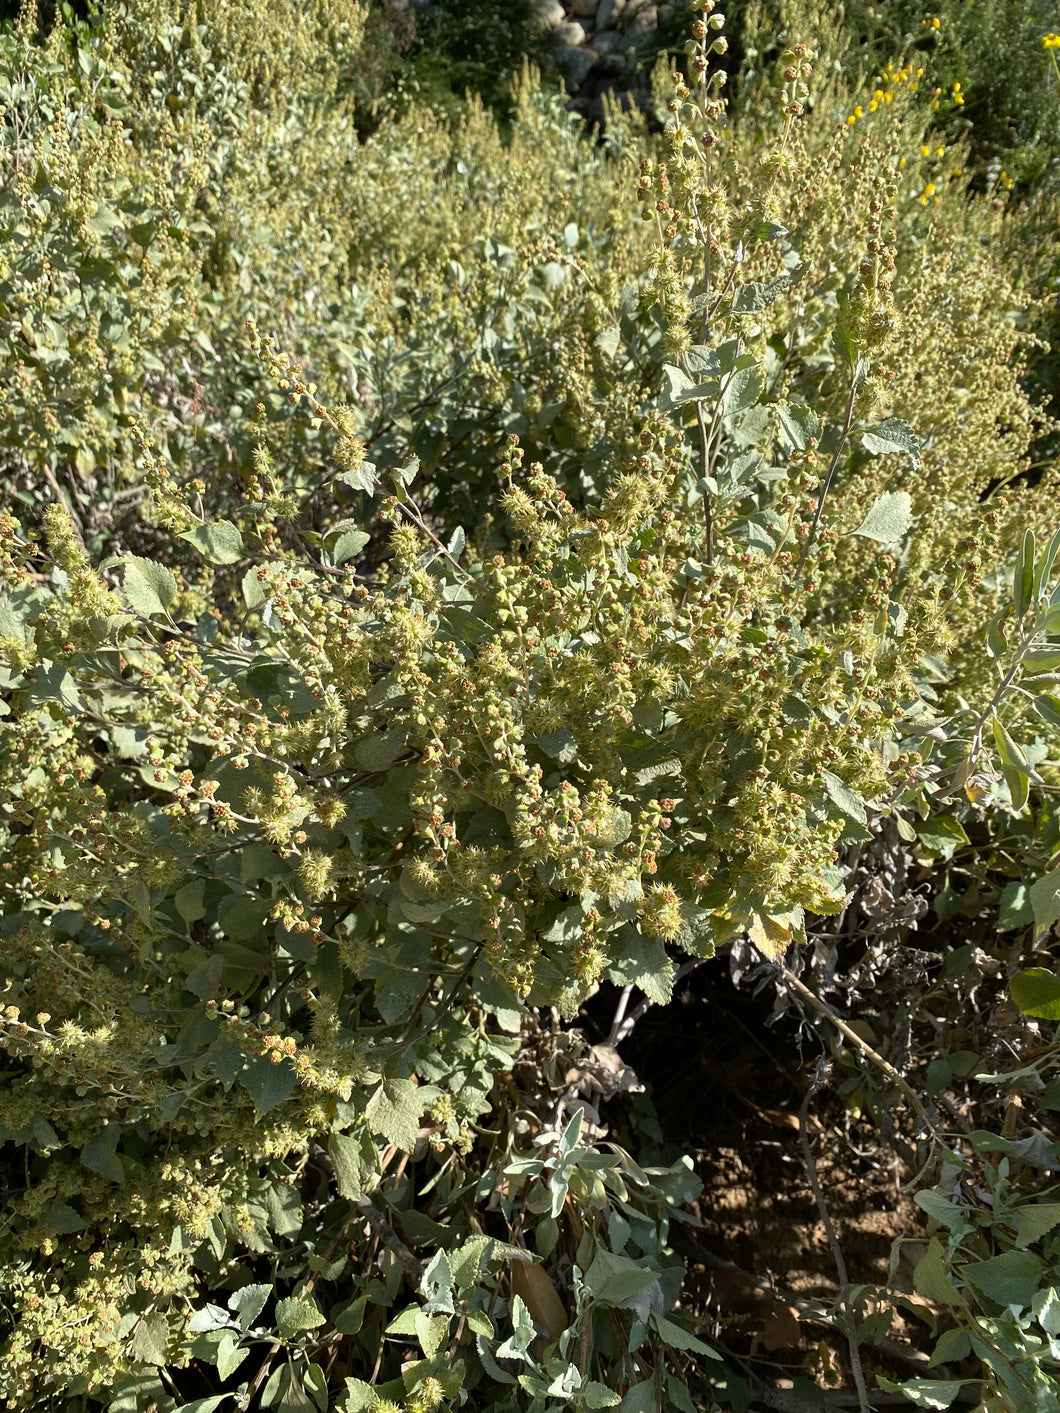 Ambrosia chenopodiifolia San Diego Bursage